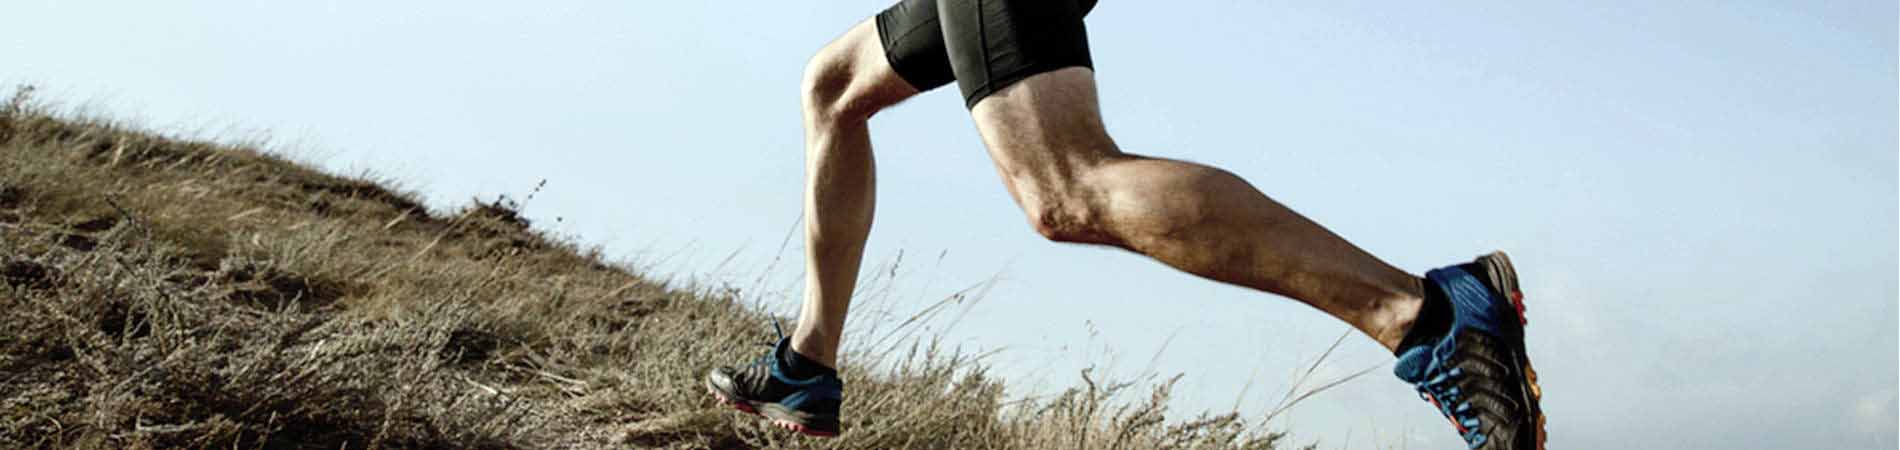 pierderea în greutate sprint vs jog)